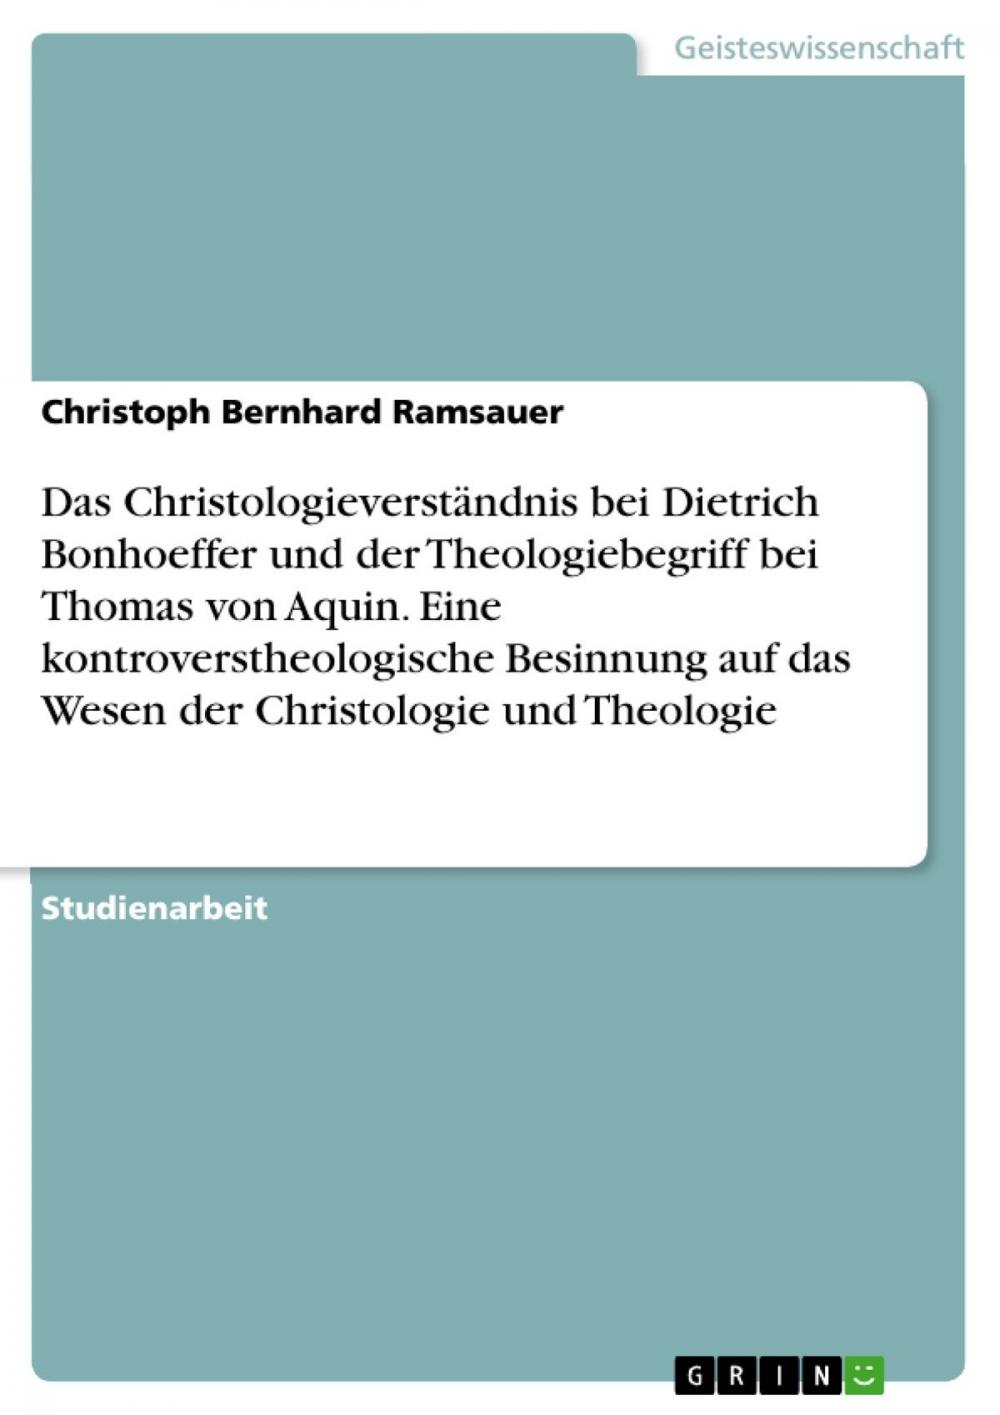 Big bigCover of Das Christologieverständnis bei Dietrich Bonhoeffer und der Theologiebegriff bei Thomas von Aquin. Eine kontroverstheologische Besinnung auf das Wesen der Christologie und Theologie